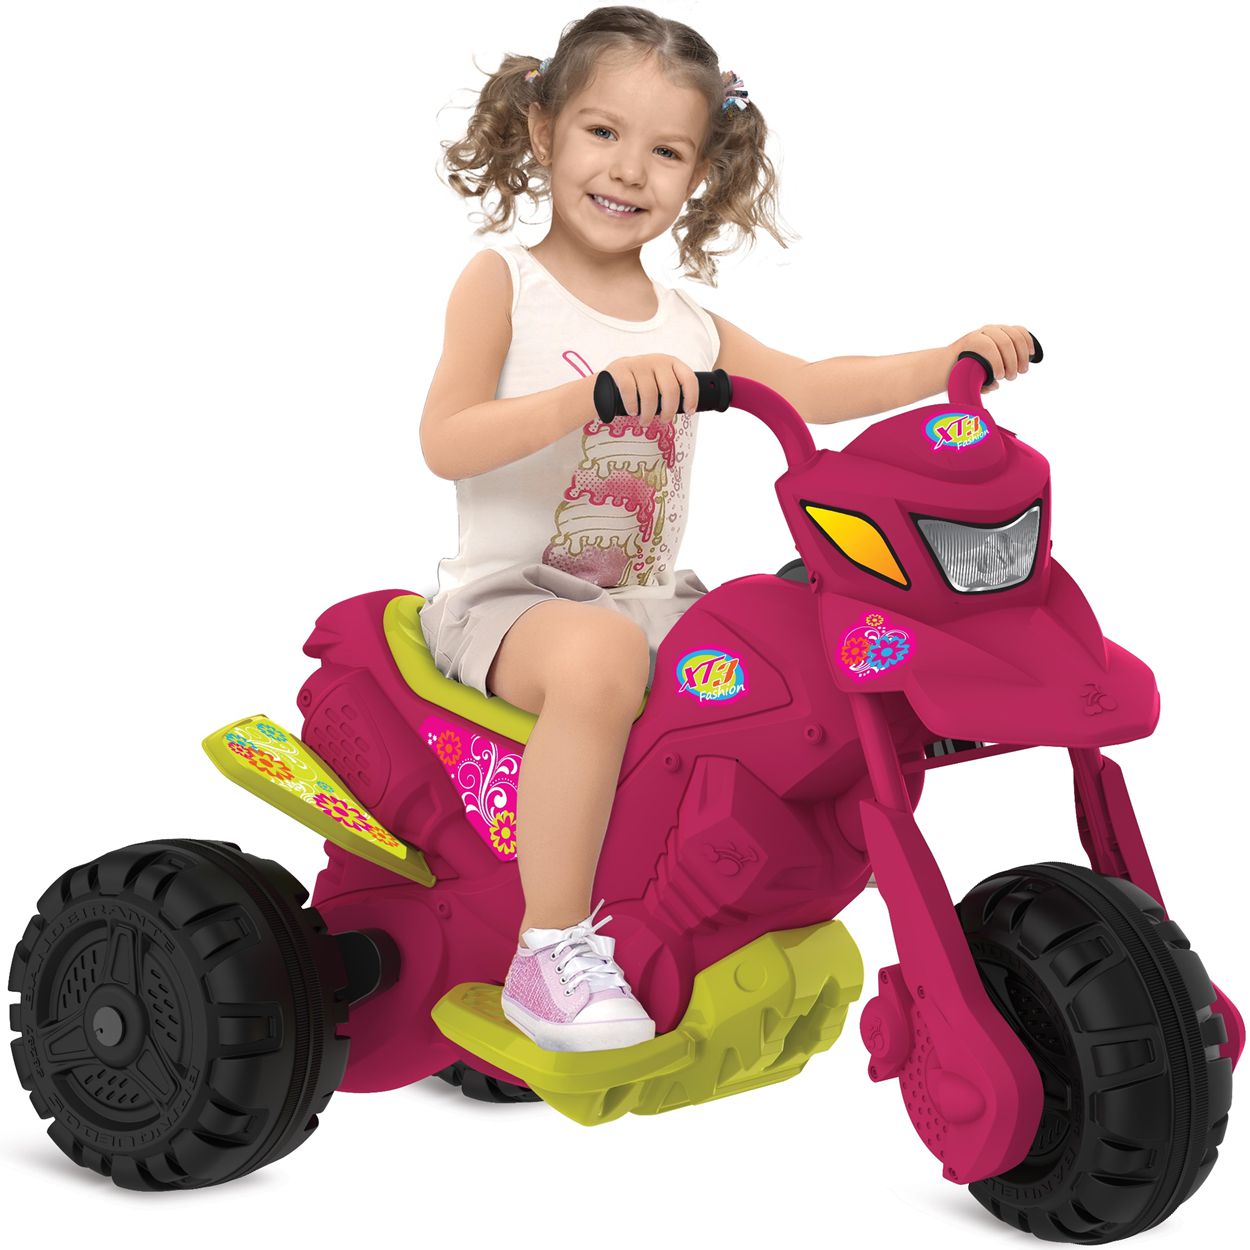 Moto Infantil Scooter Bandeirante Rosa - 2670